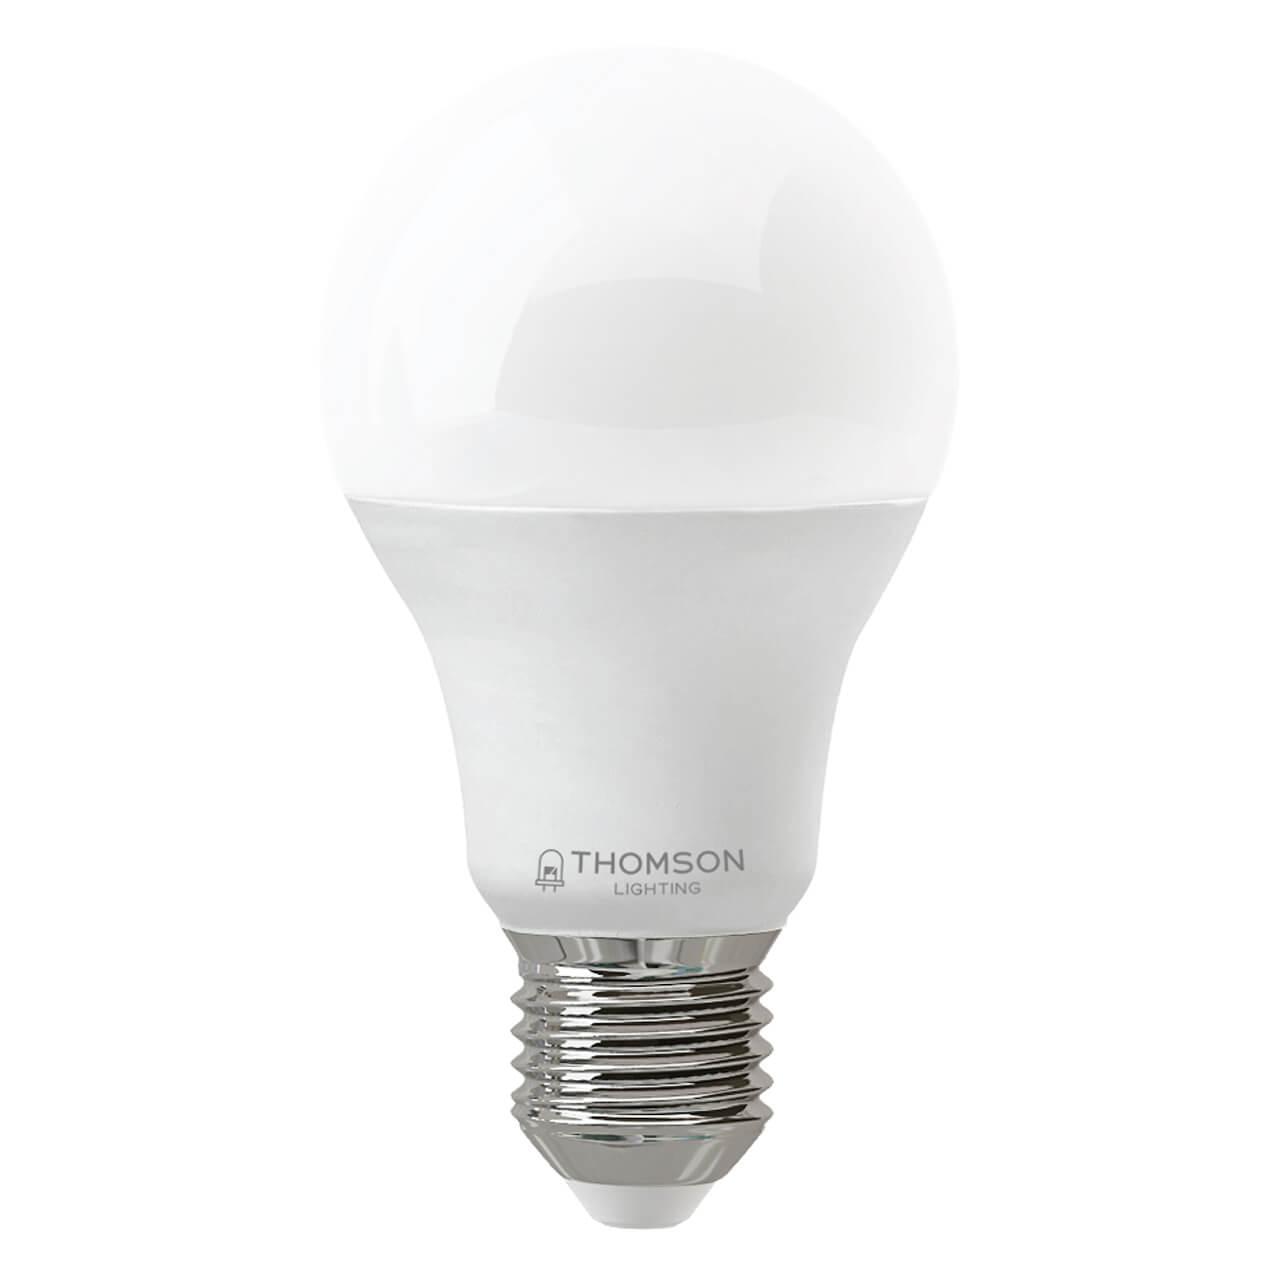 TH-B2300 Лампа светодиодная E27 5W 6500K груша матовая Thomson